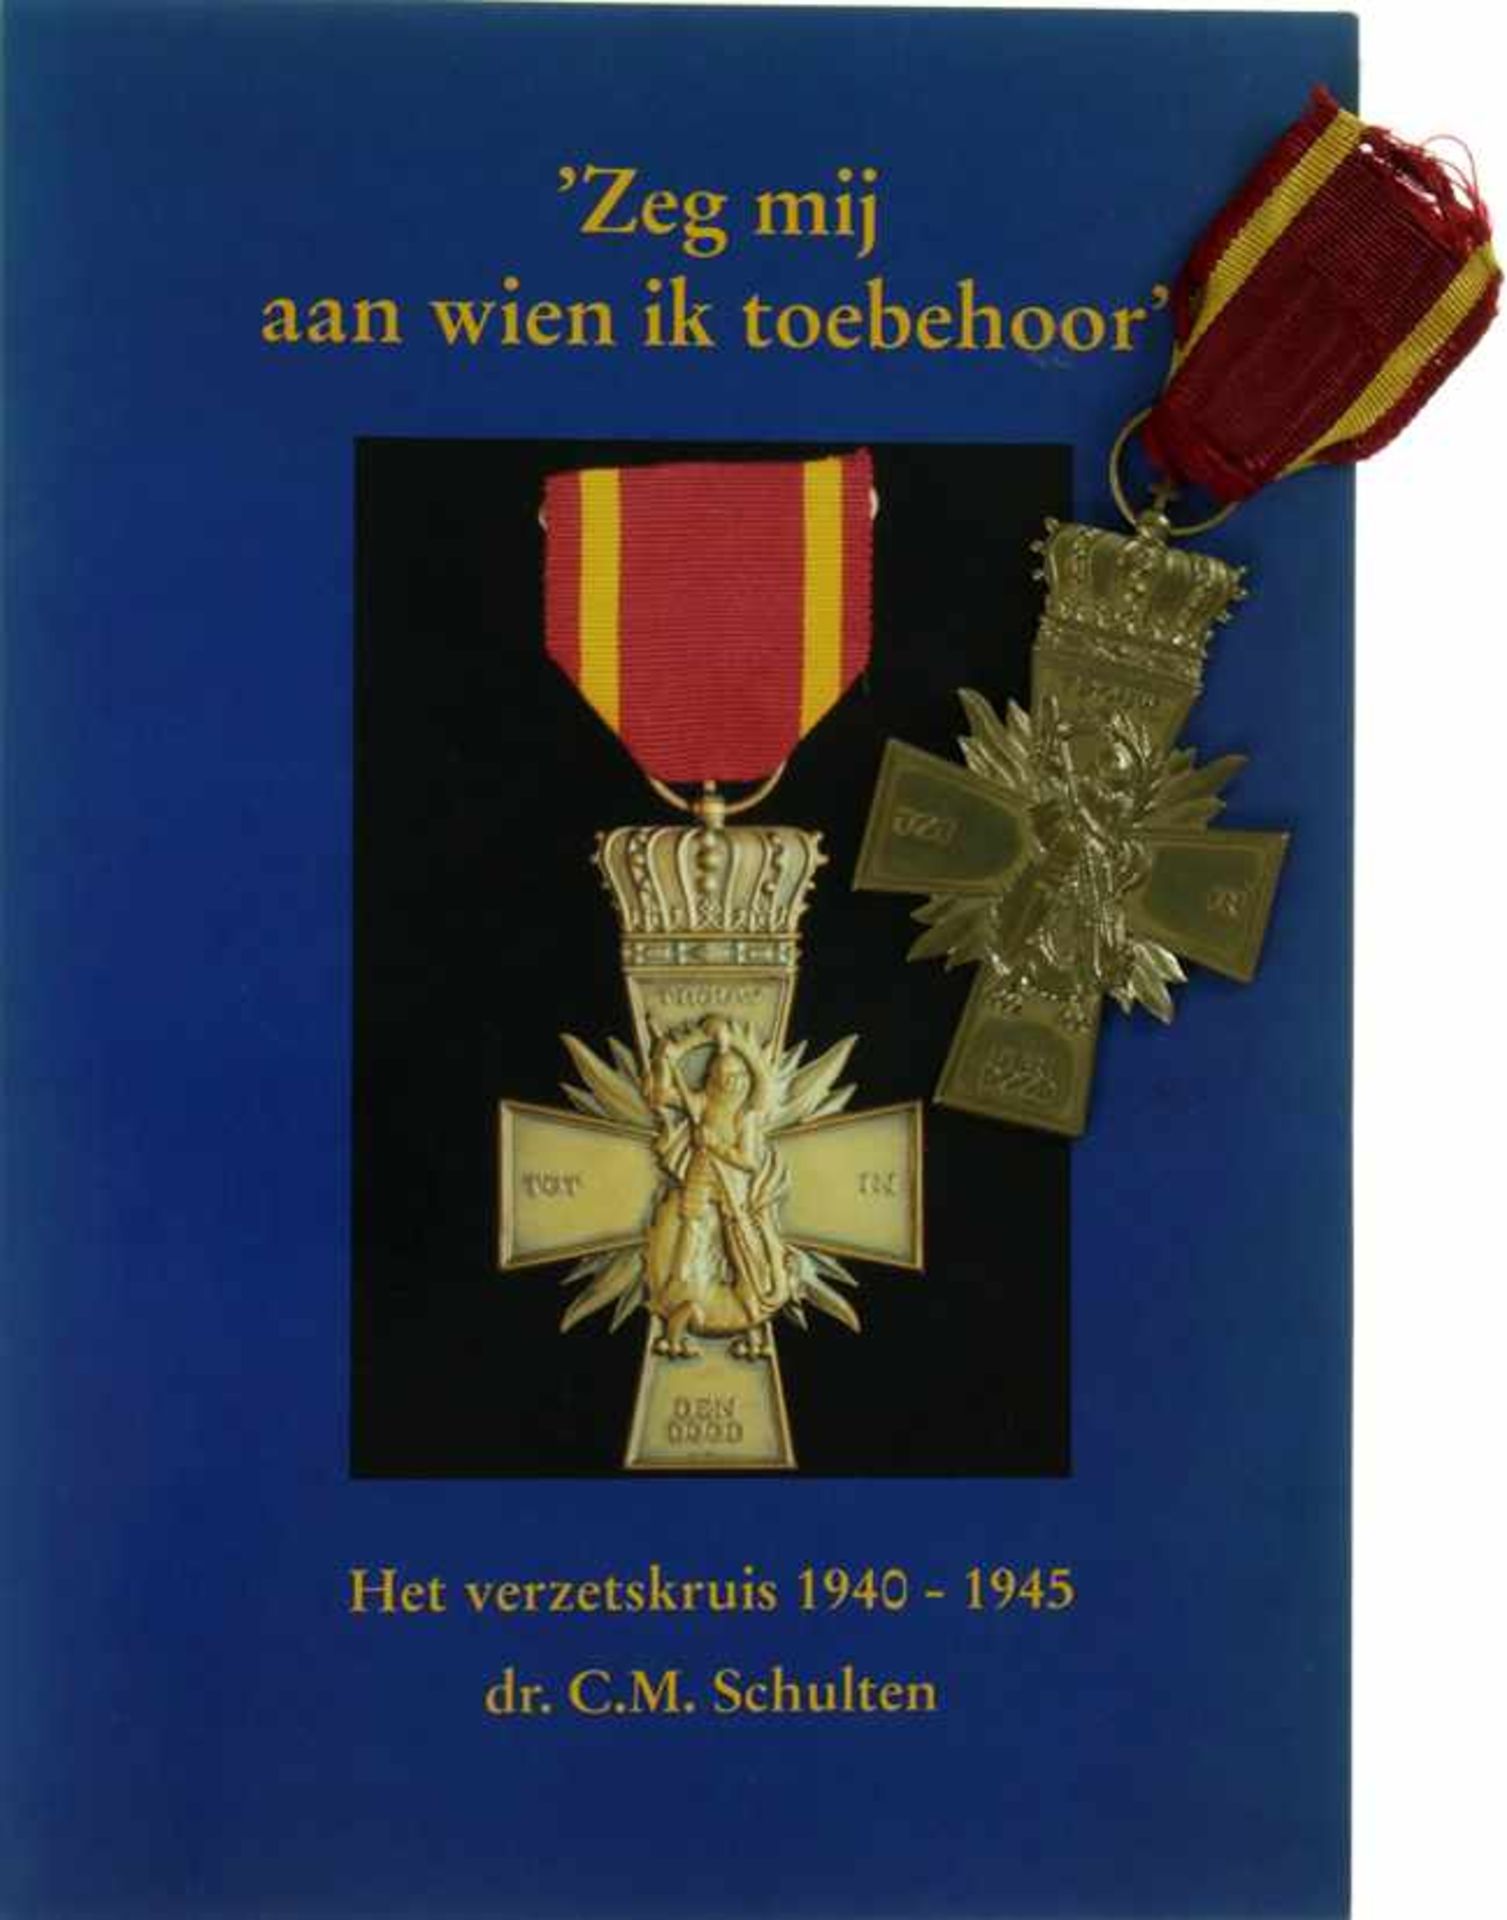 Nederland / Netherlands - WOII, naslag Verzetskruis Postuum uit 1946, met bijbehorend boek 'Zeg